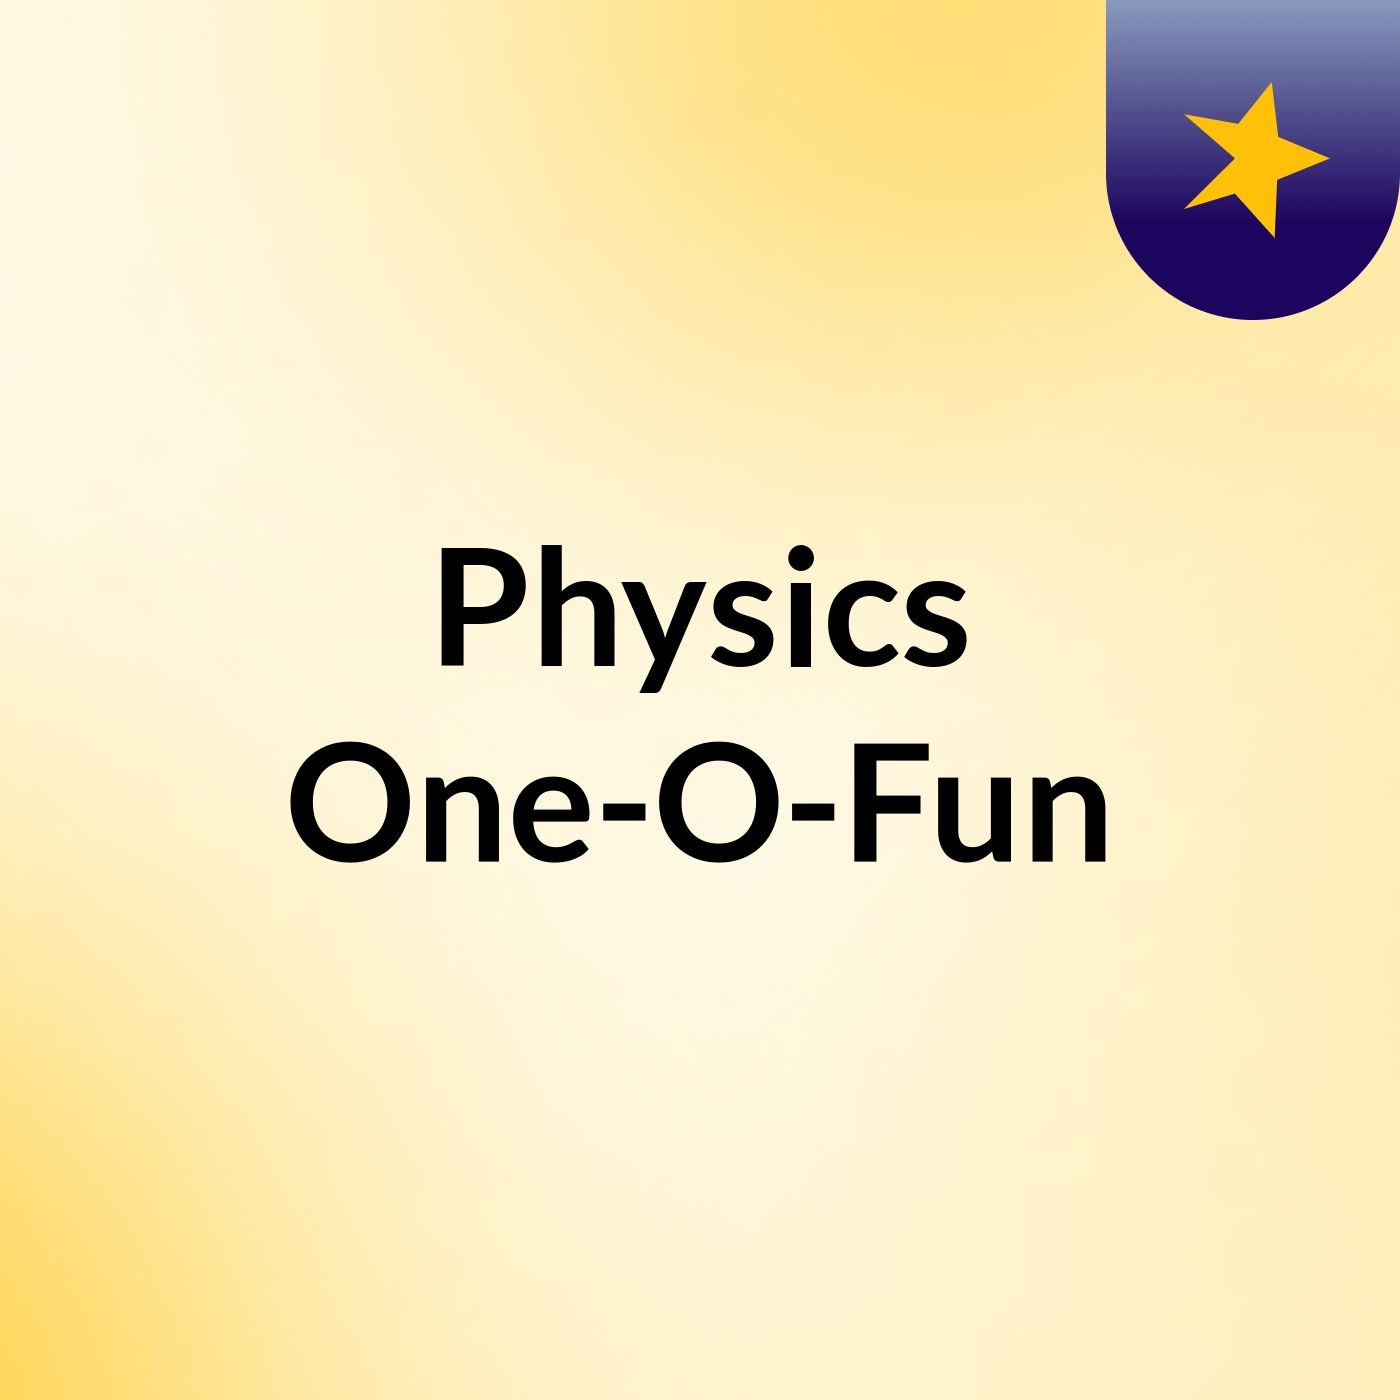 Physics One-O-Fun